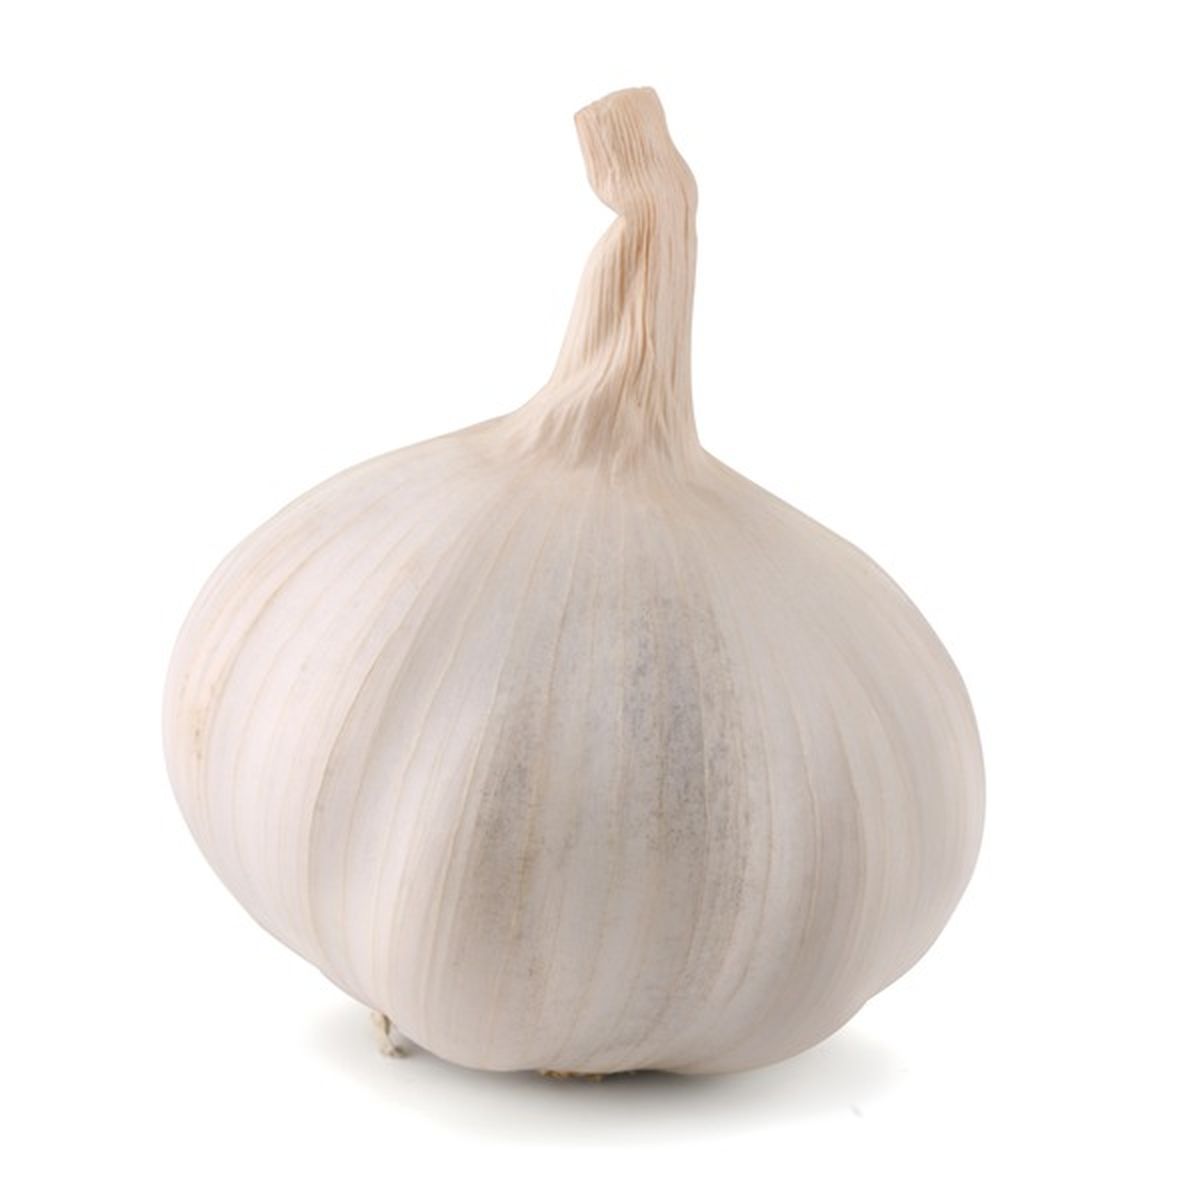 of garlic, minced